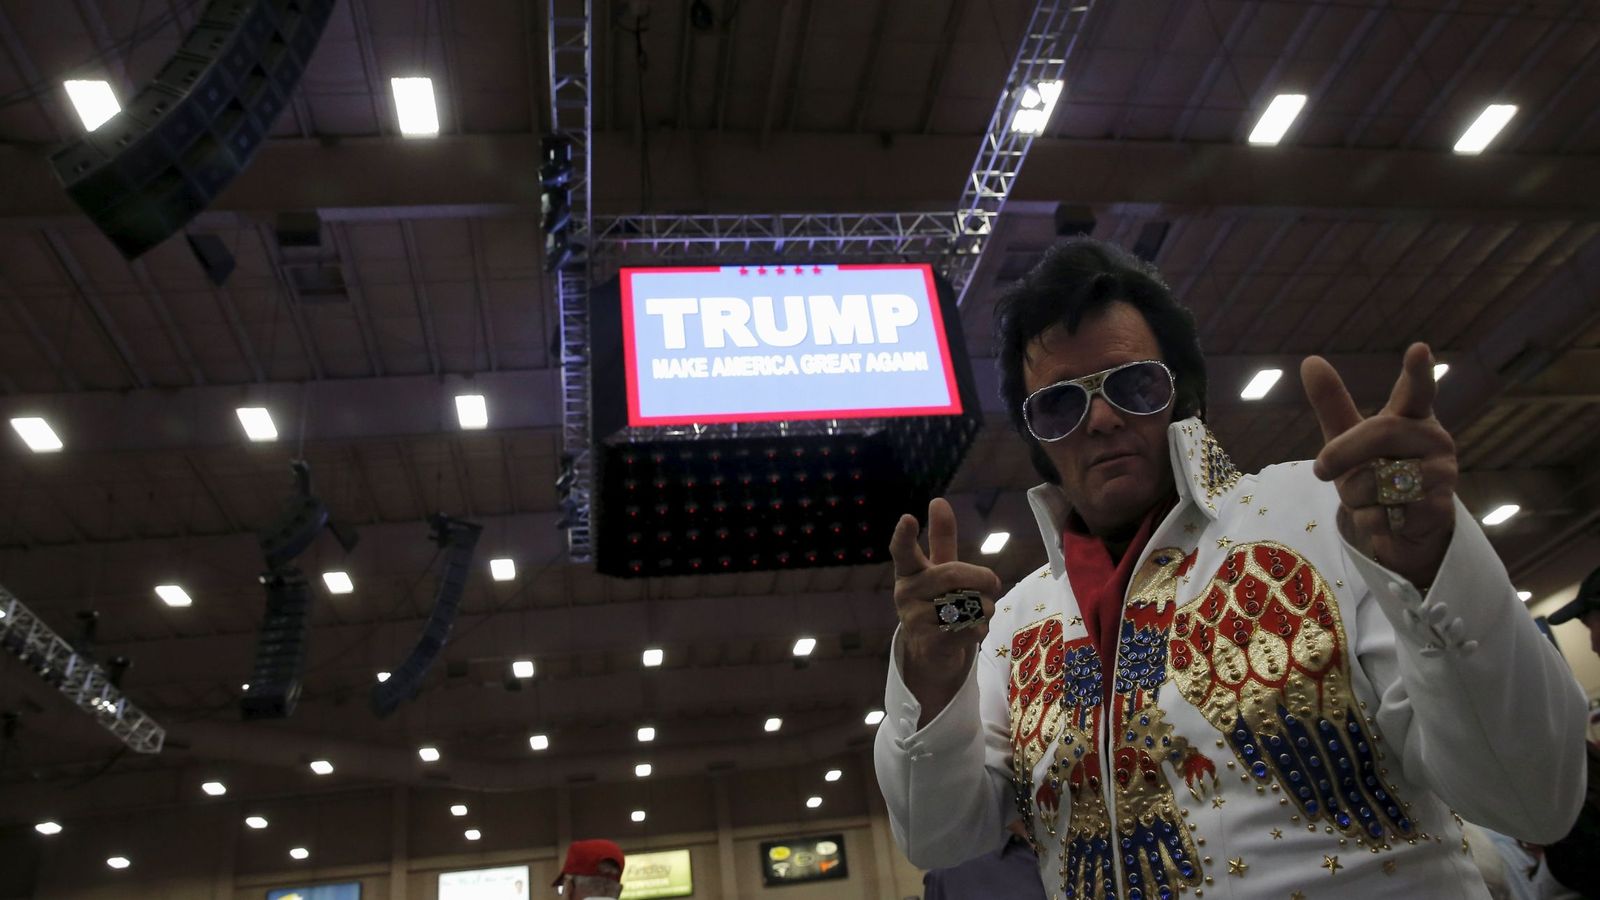 Foto: Paige Poole, votante de Donald Trump, durante un mitin electoral del candidato en Las Vegas, Nevada, el 22 de febrero de 2016 (Reuters).